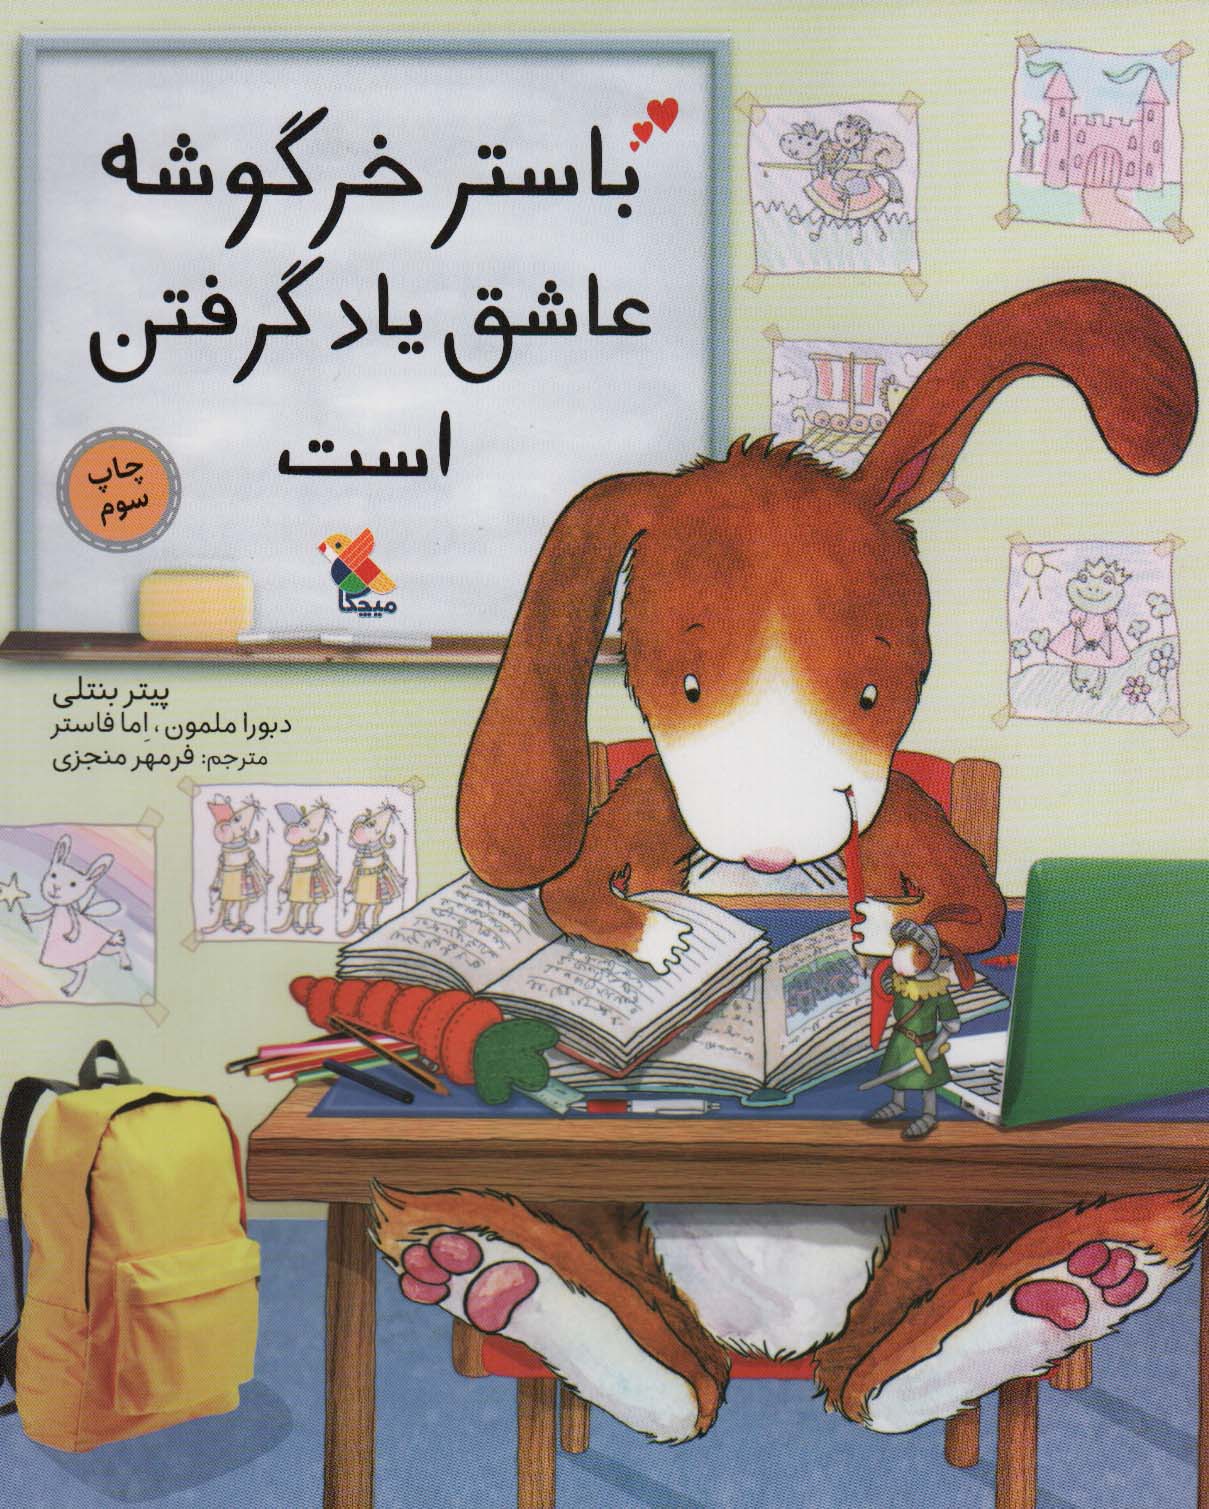  کتاب باستر خرگوشه عاشق یاد گرفتن است